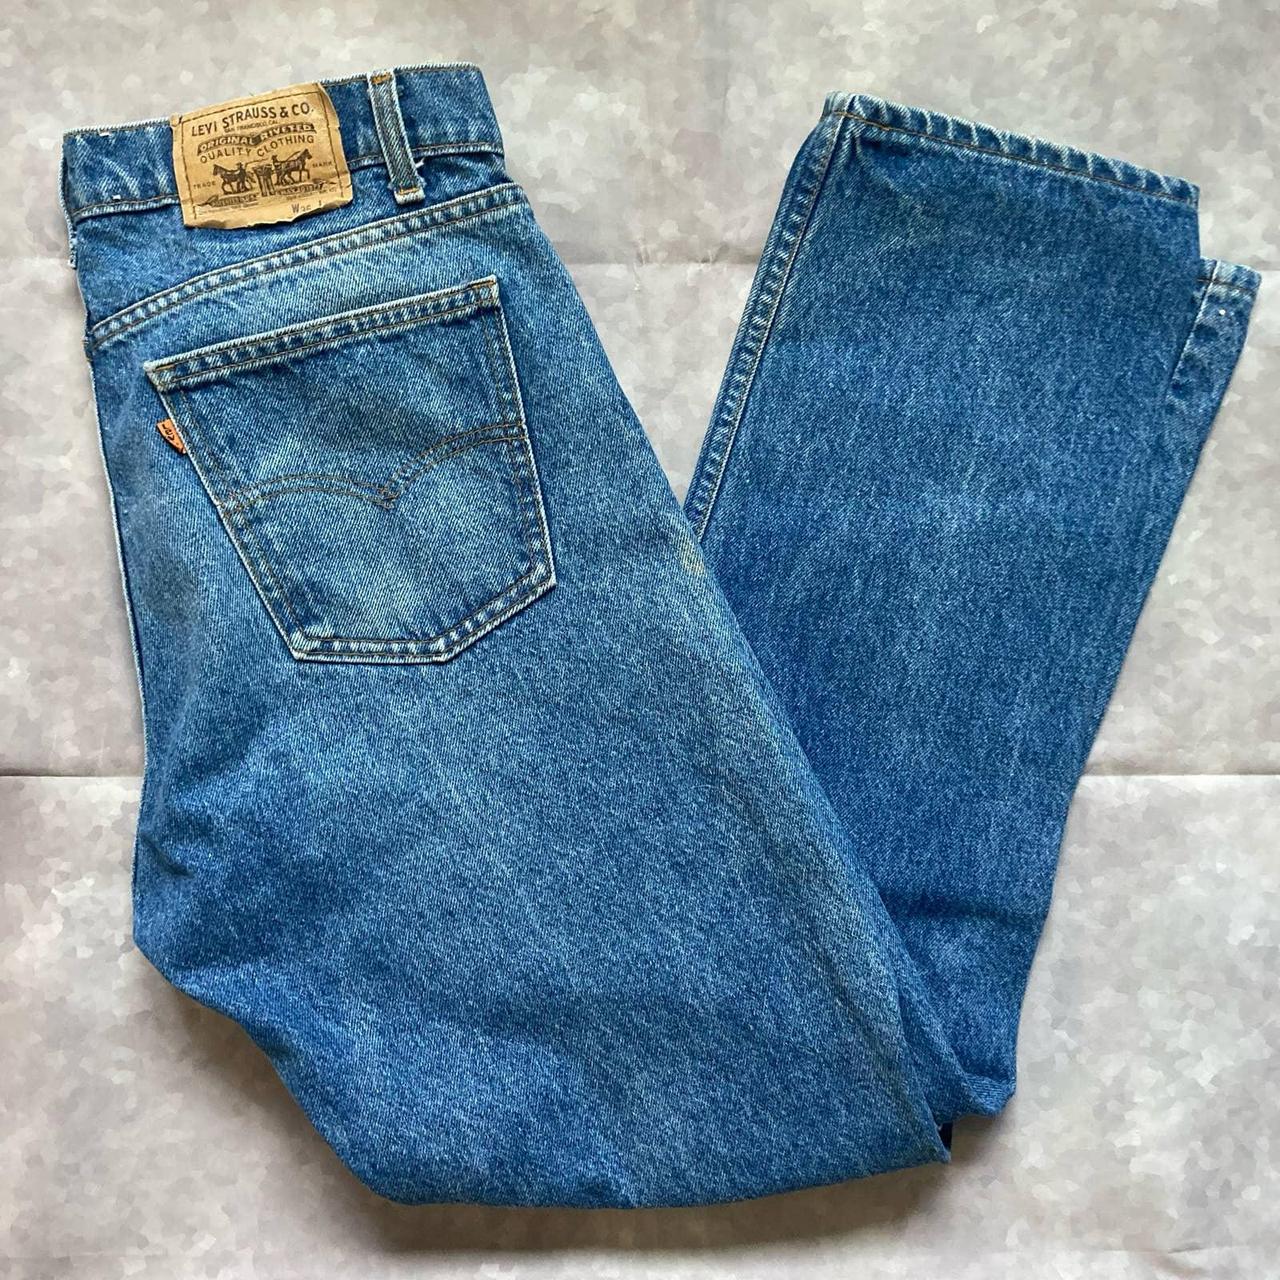 Vintage Levis 505s Orange Tab Jeans Made In USA... - Depop